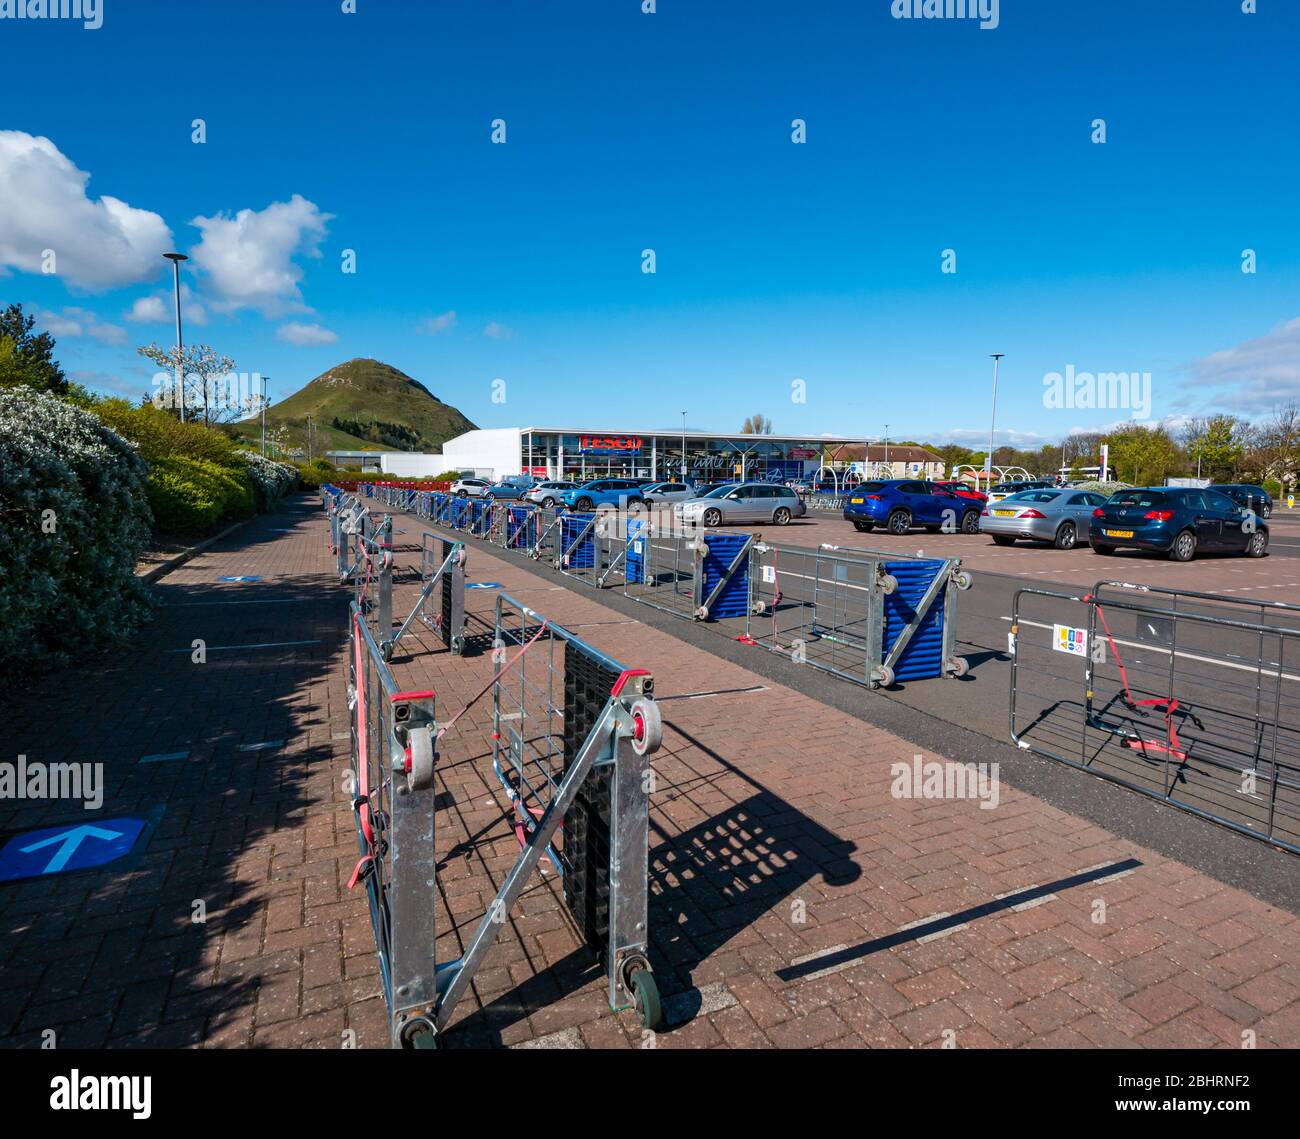 Barriere realizzate da carrelli nel parcheggio del supermercato Tesco per creare barriere sociali sicure per gli acquirenti in coda, North Berwick, Scotland, UK Foto Stock